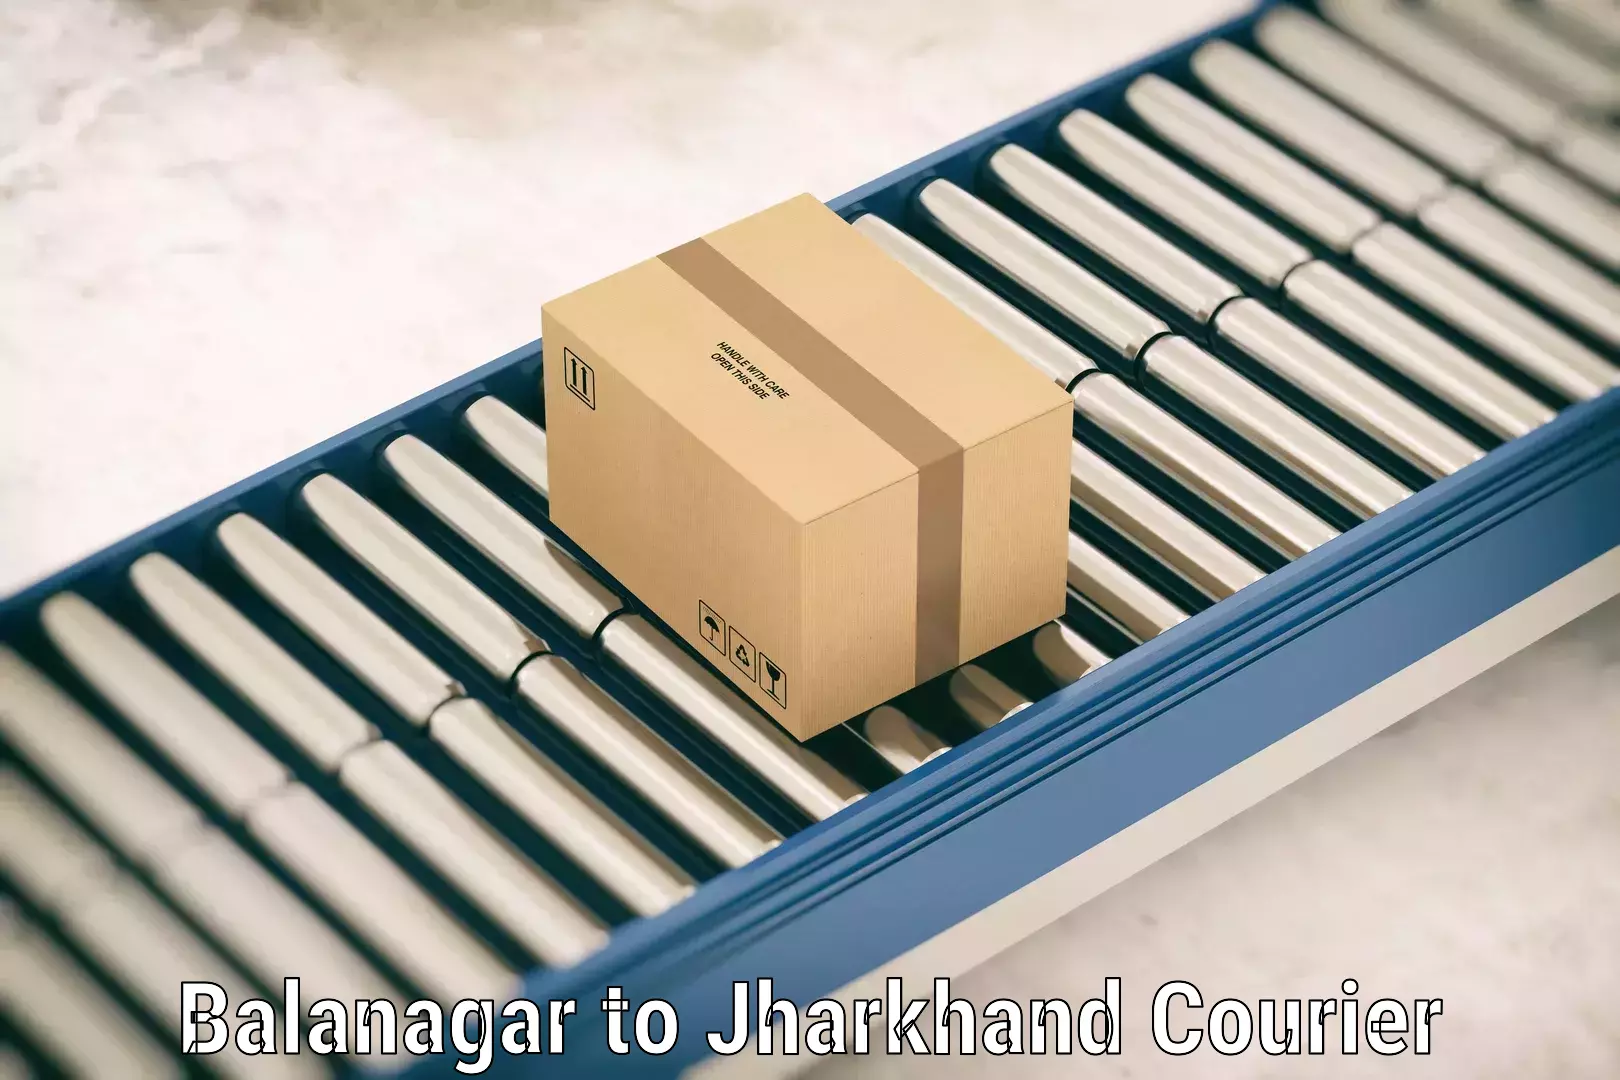 Excess baggage transport Balanagar to Gomoh